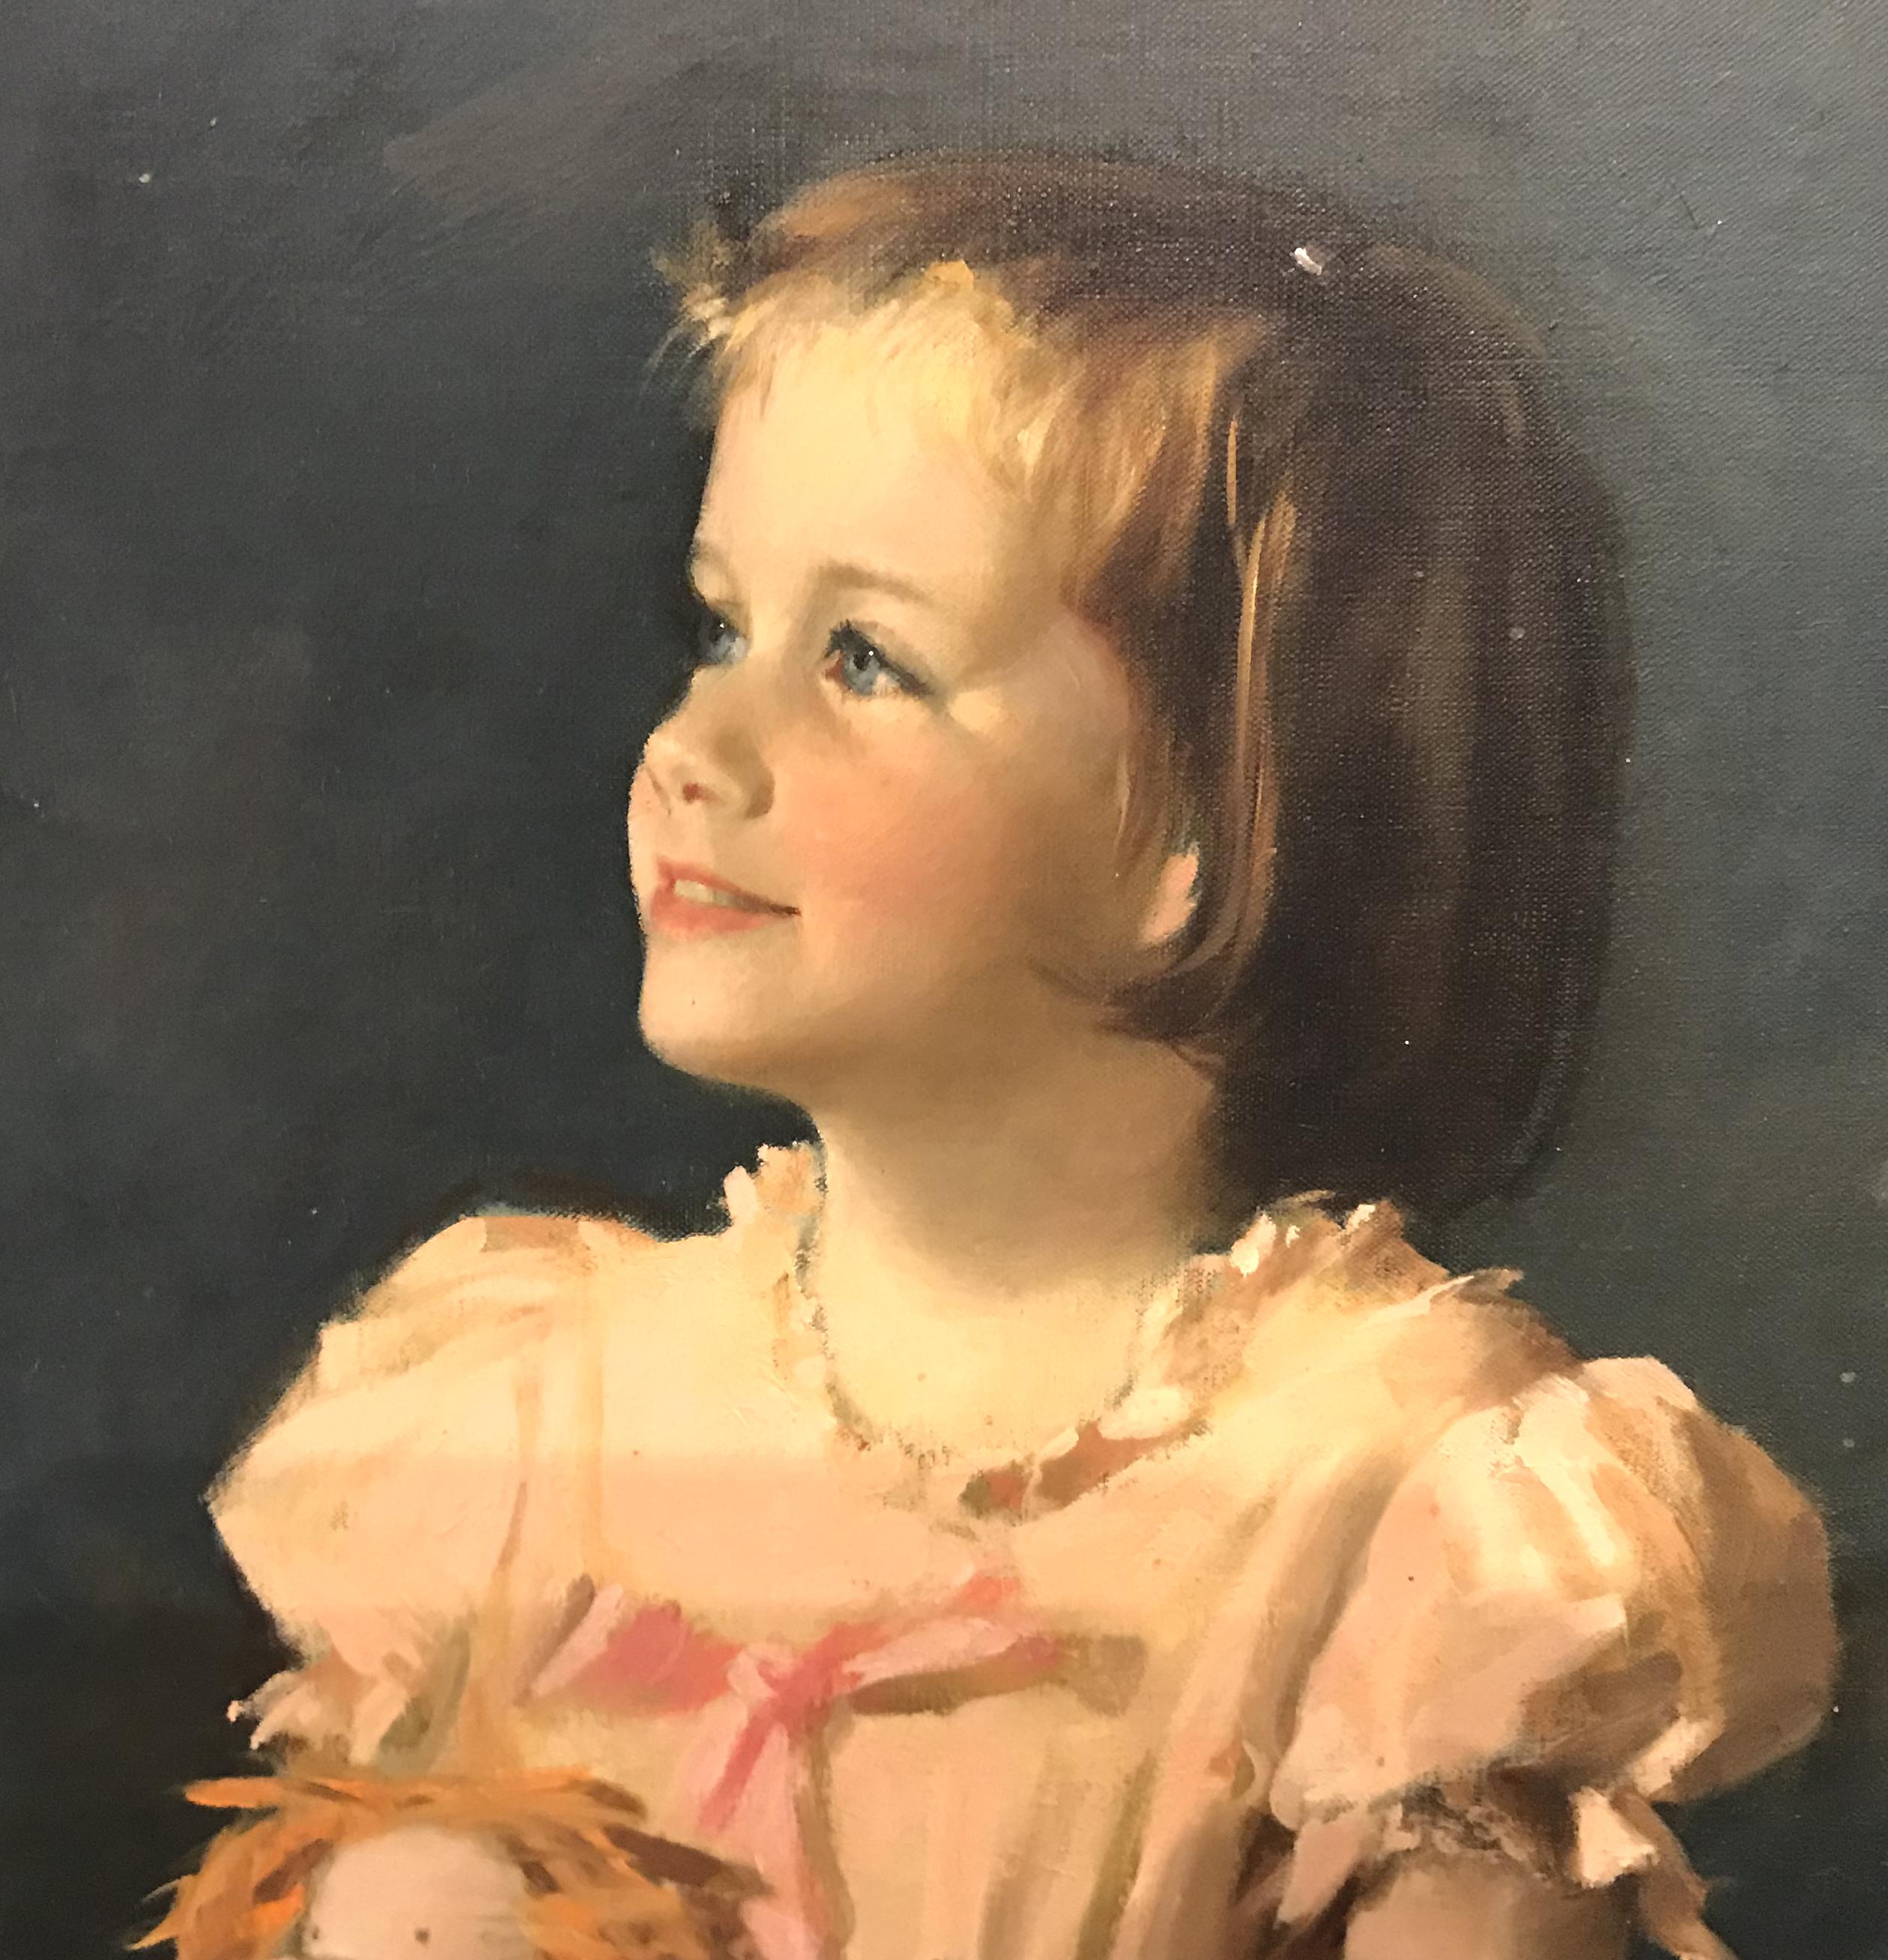 Ein schönes Porträt der 5 Jahre alten Christina Patterson des amerikanischen Künstlers Aaron Abraham Shikler (1922-2015). Shikler wurde in Brooklyn, New York, geboren, studierte an der Tyler School of Art an der Temple University und anschließend in